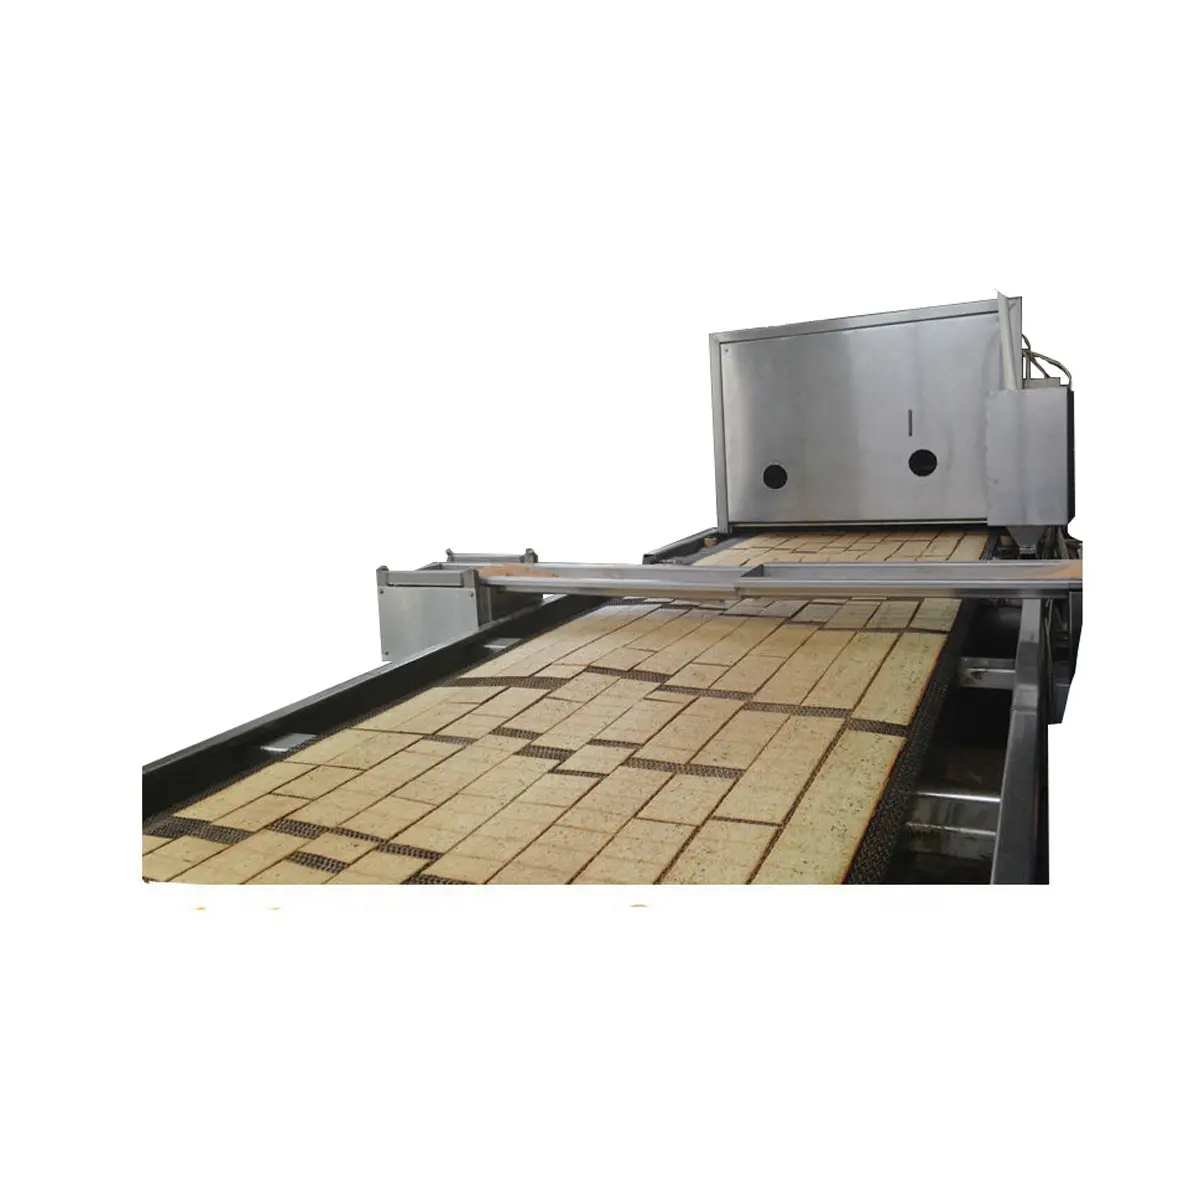 100 kg/saat otomatik küçük bisküvi makine sanayi ekipmanları/bisküvi gıda ve içecek üretimi için makineler